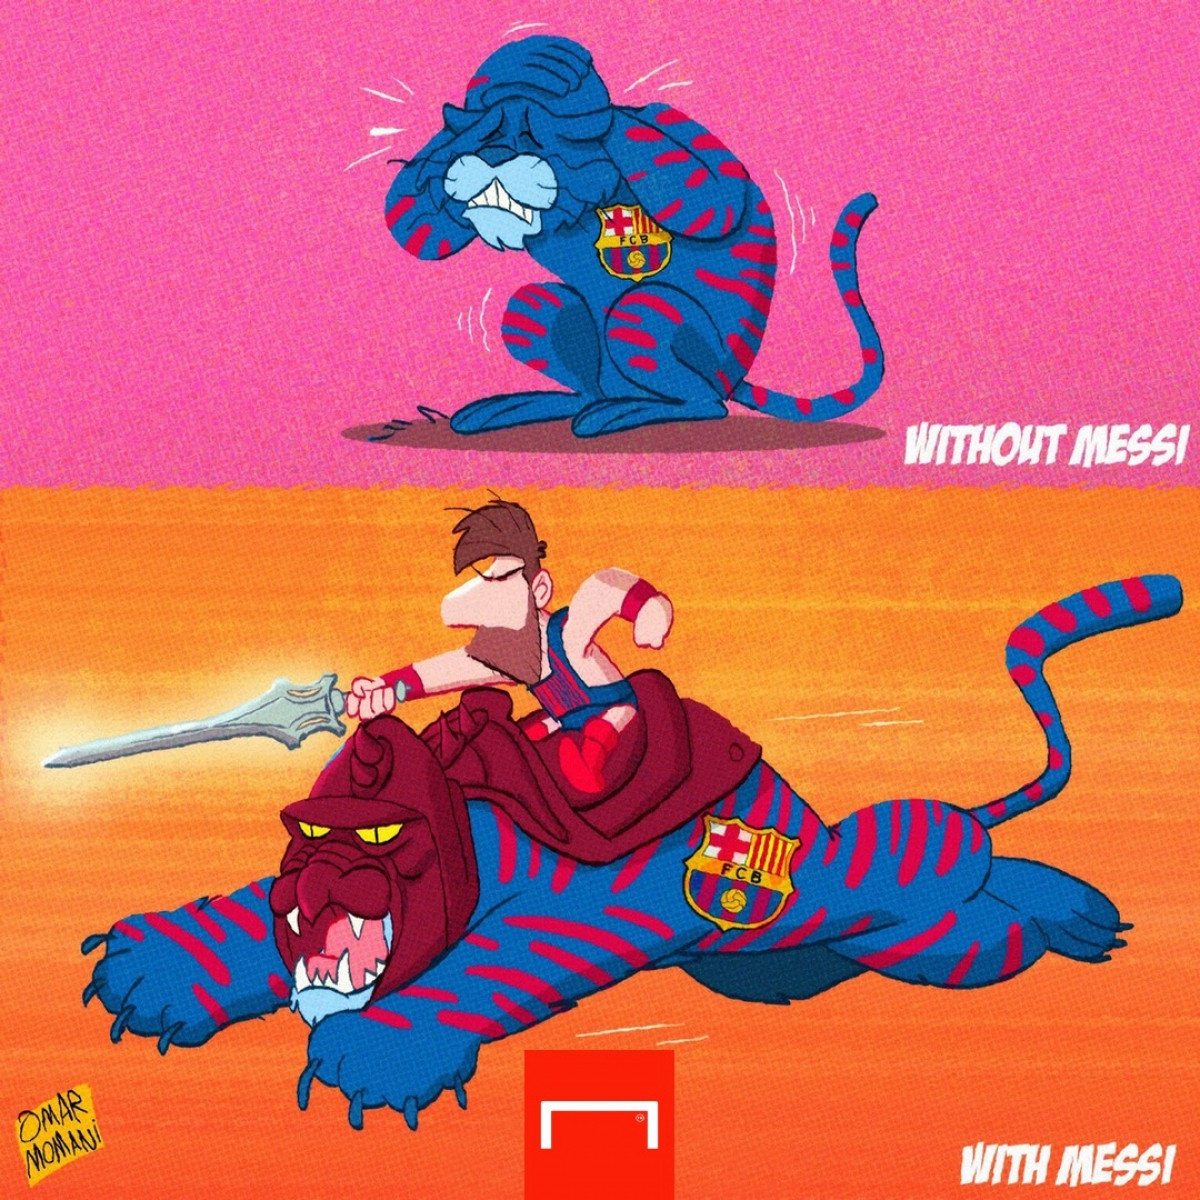 Sự khác biệt của Barca khi có Messi và không có Messi. (Ảnh: Omar Monani)./. 